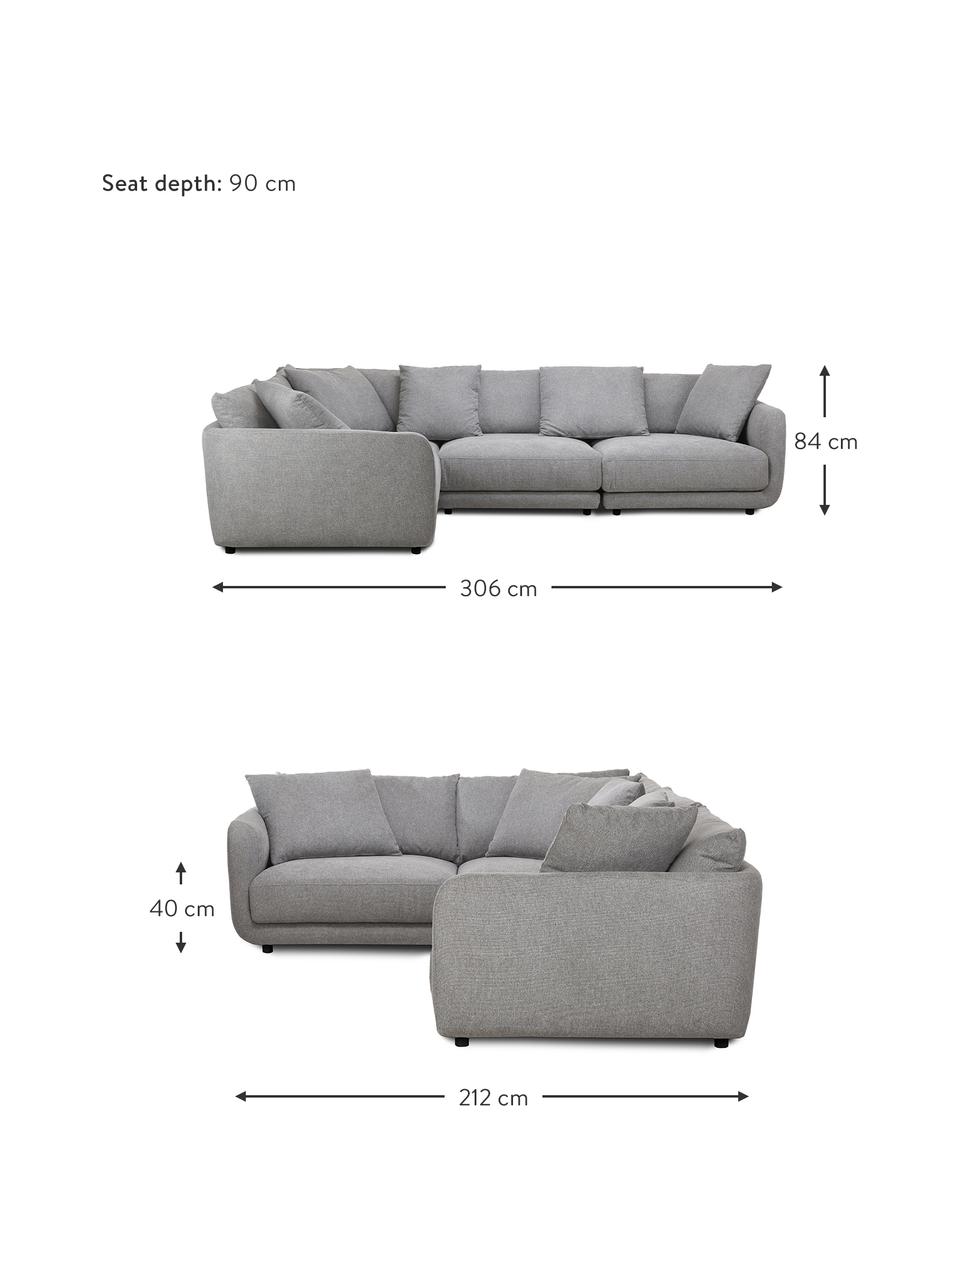 Narożna sofa modułowa Jasmin, Tapicerka: 85% poliester, 15% nylon , Nogi: tworzywo sztuczne, Szara tkanina, S 306 x W 84 cm